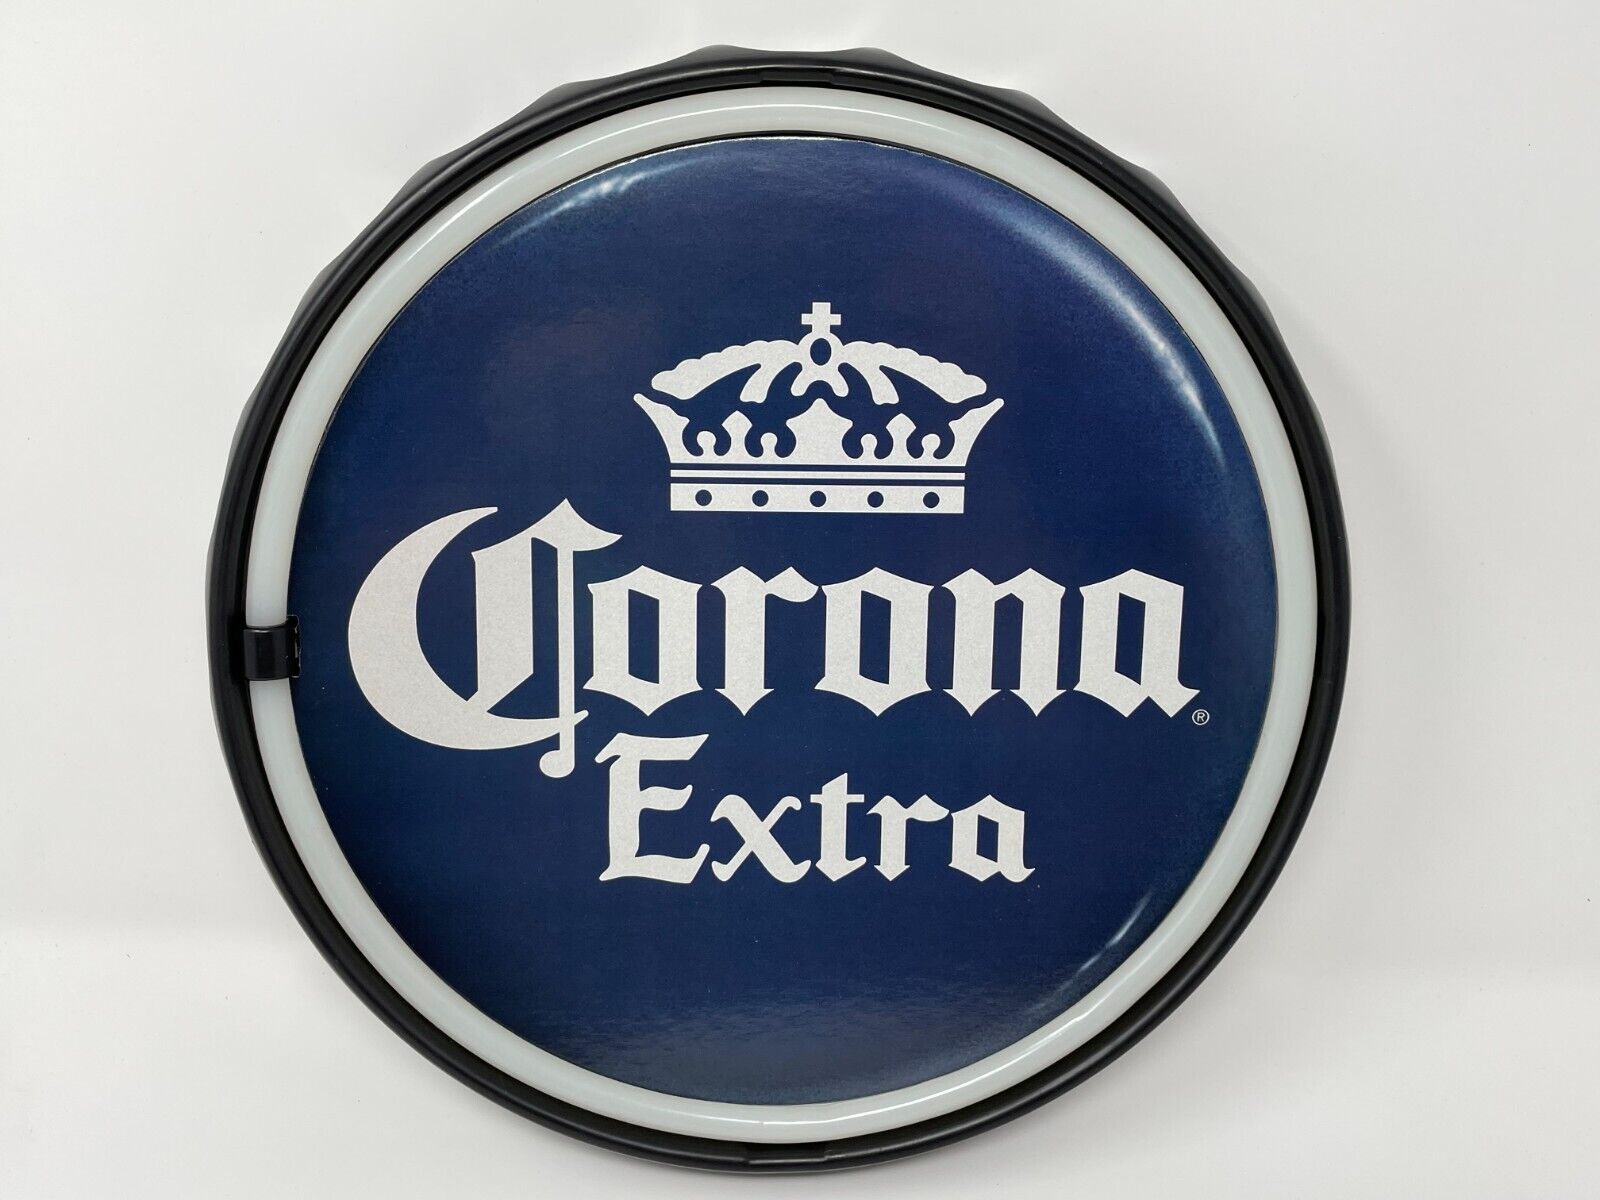 Corona Extra Neon LED Light Rope Bar Sign Bottle Cap Round Shaped Man Cave Decor